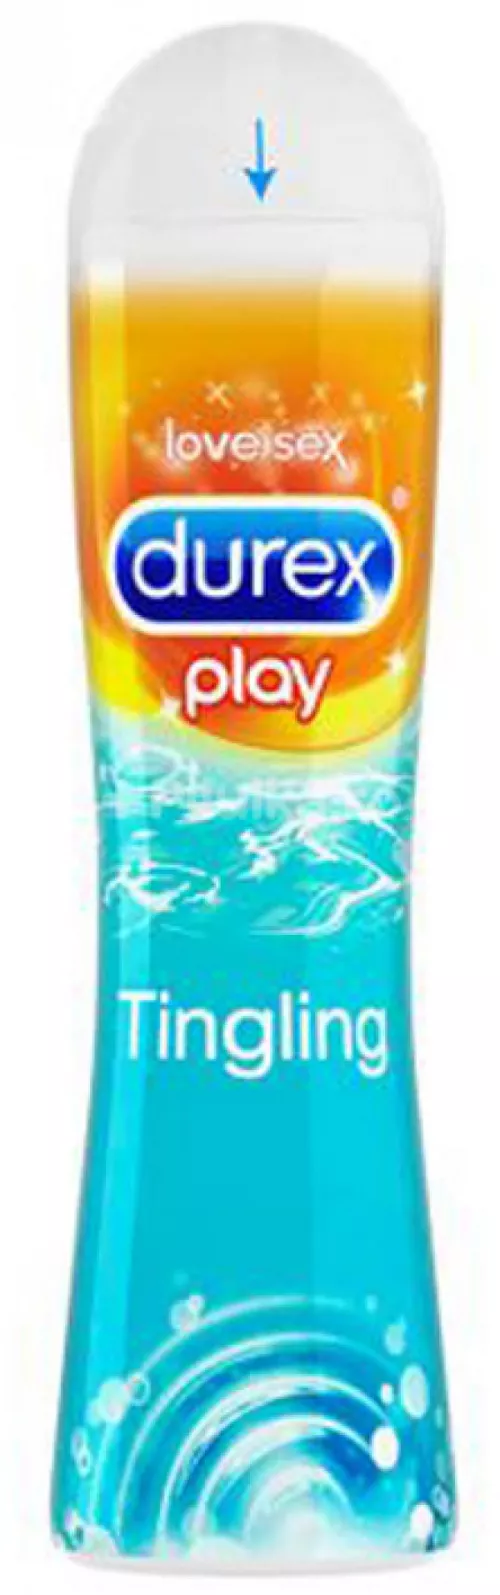 DUREX Play Tingle lubrifiant x 50ml